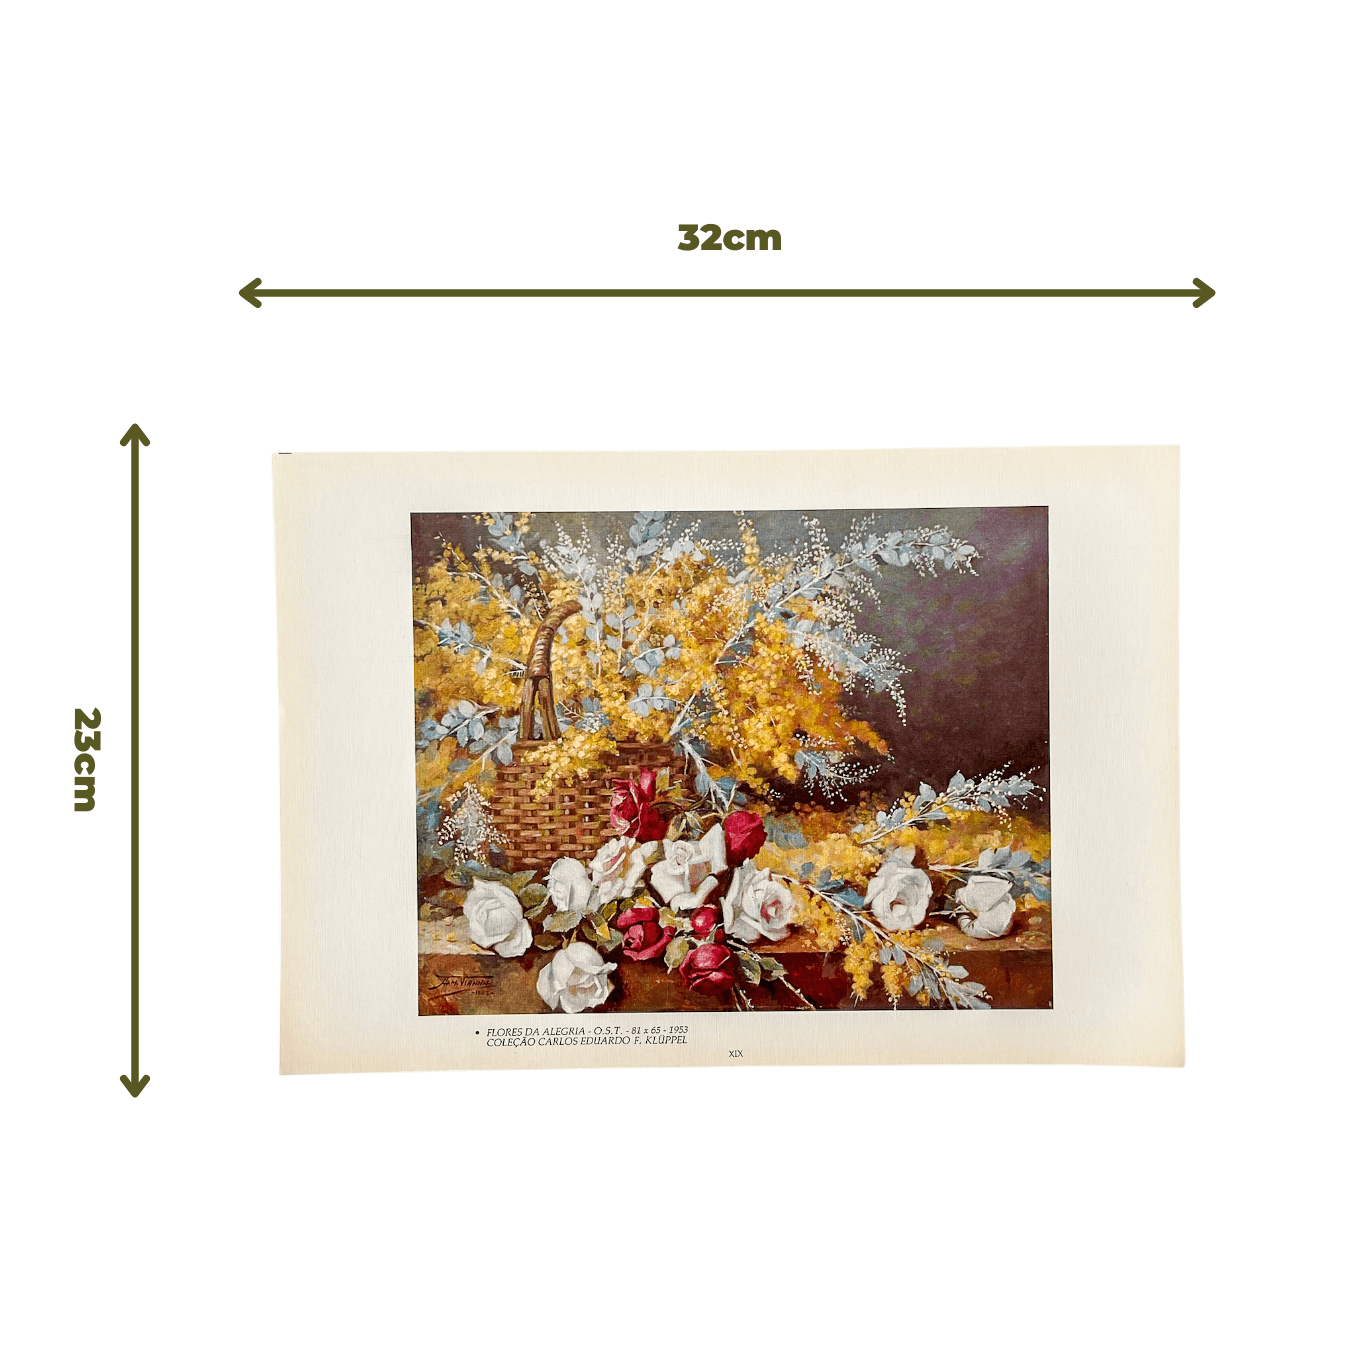 Reprodução "Flores da Alegria" de Armando Vianna de 1953 medidas